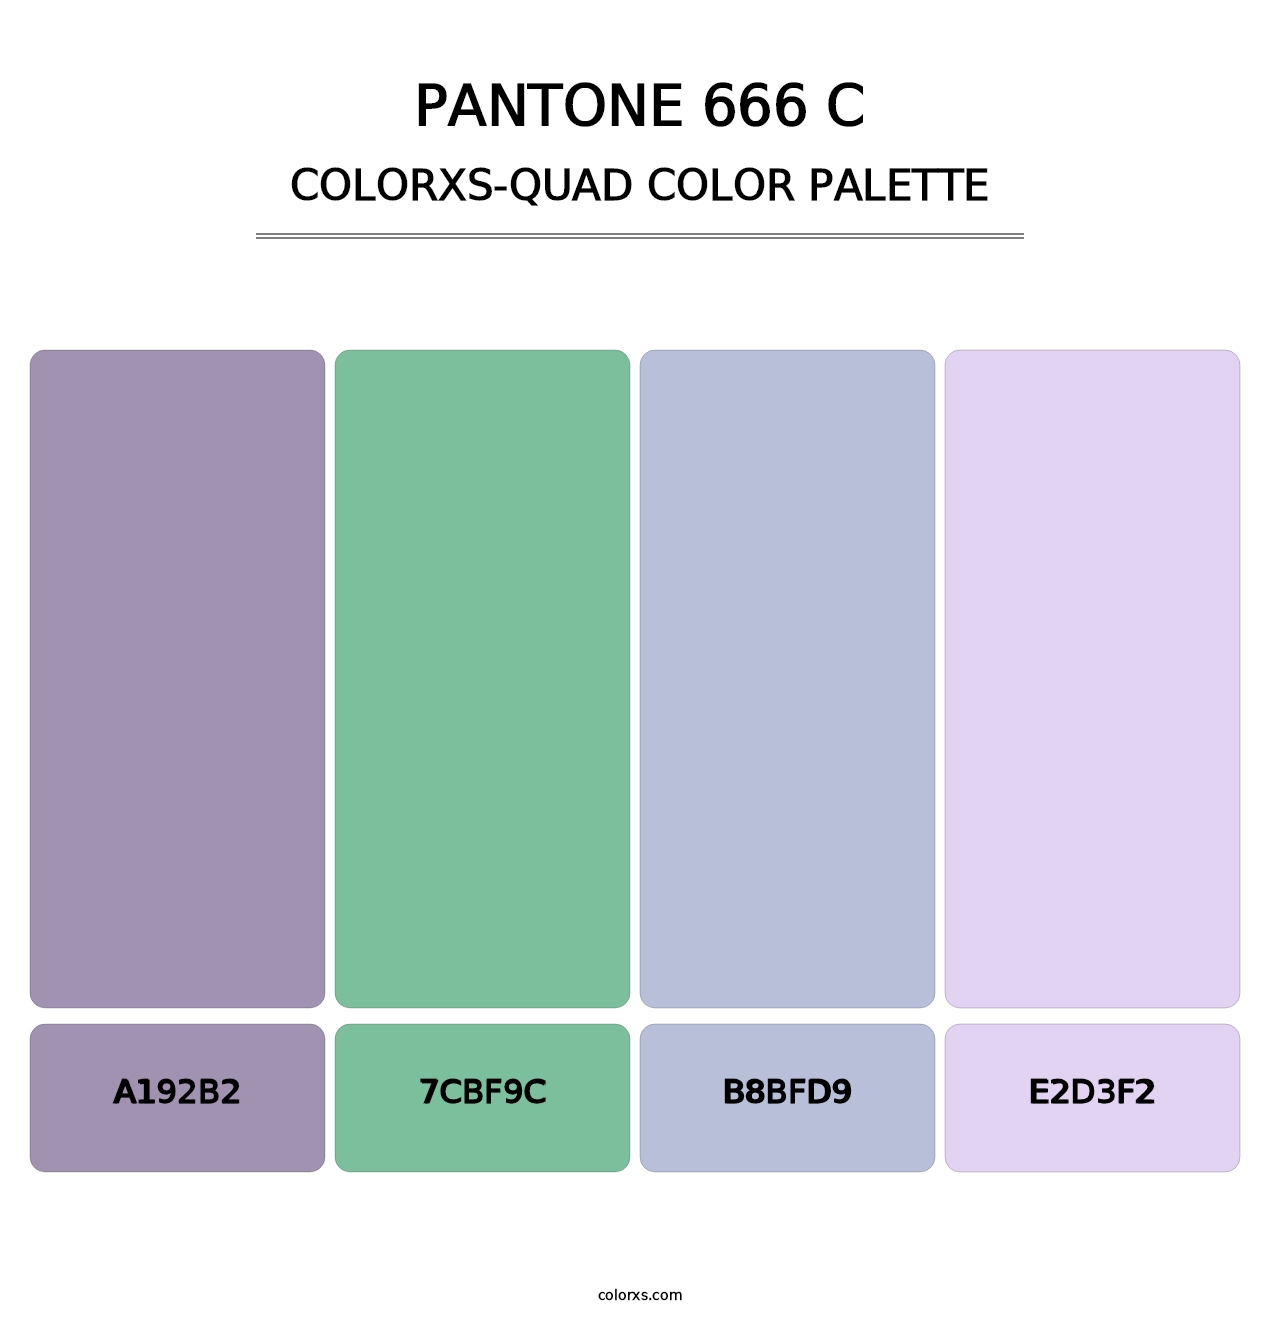 PANTONE 666 C - Colorxs Quad Palette